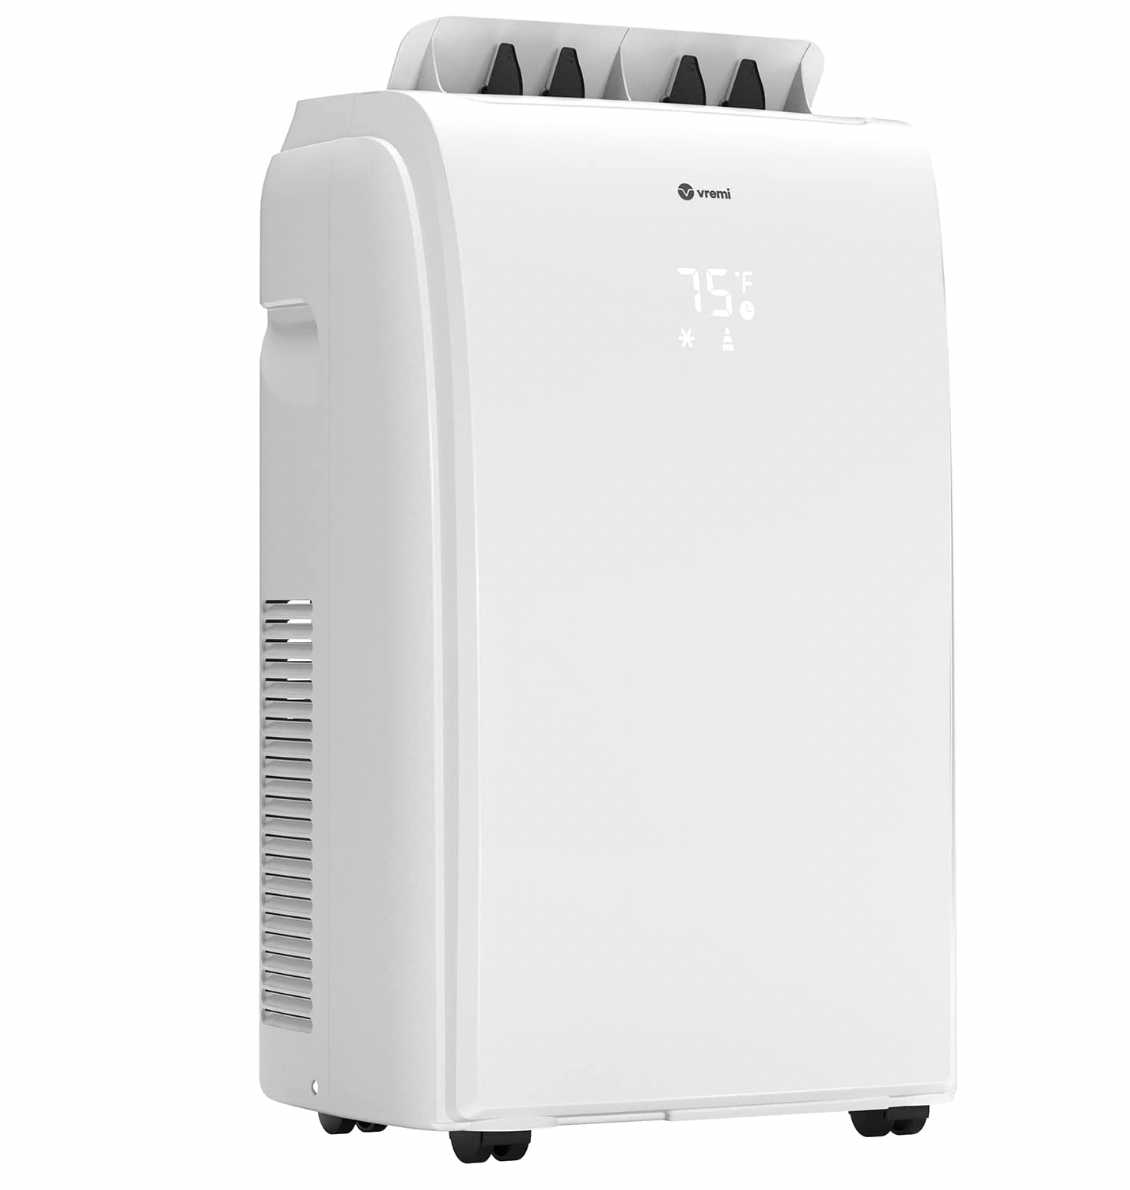 Vremi 10,000 BTU Portable Air Conditioner